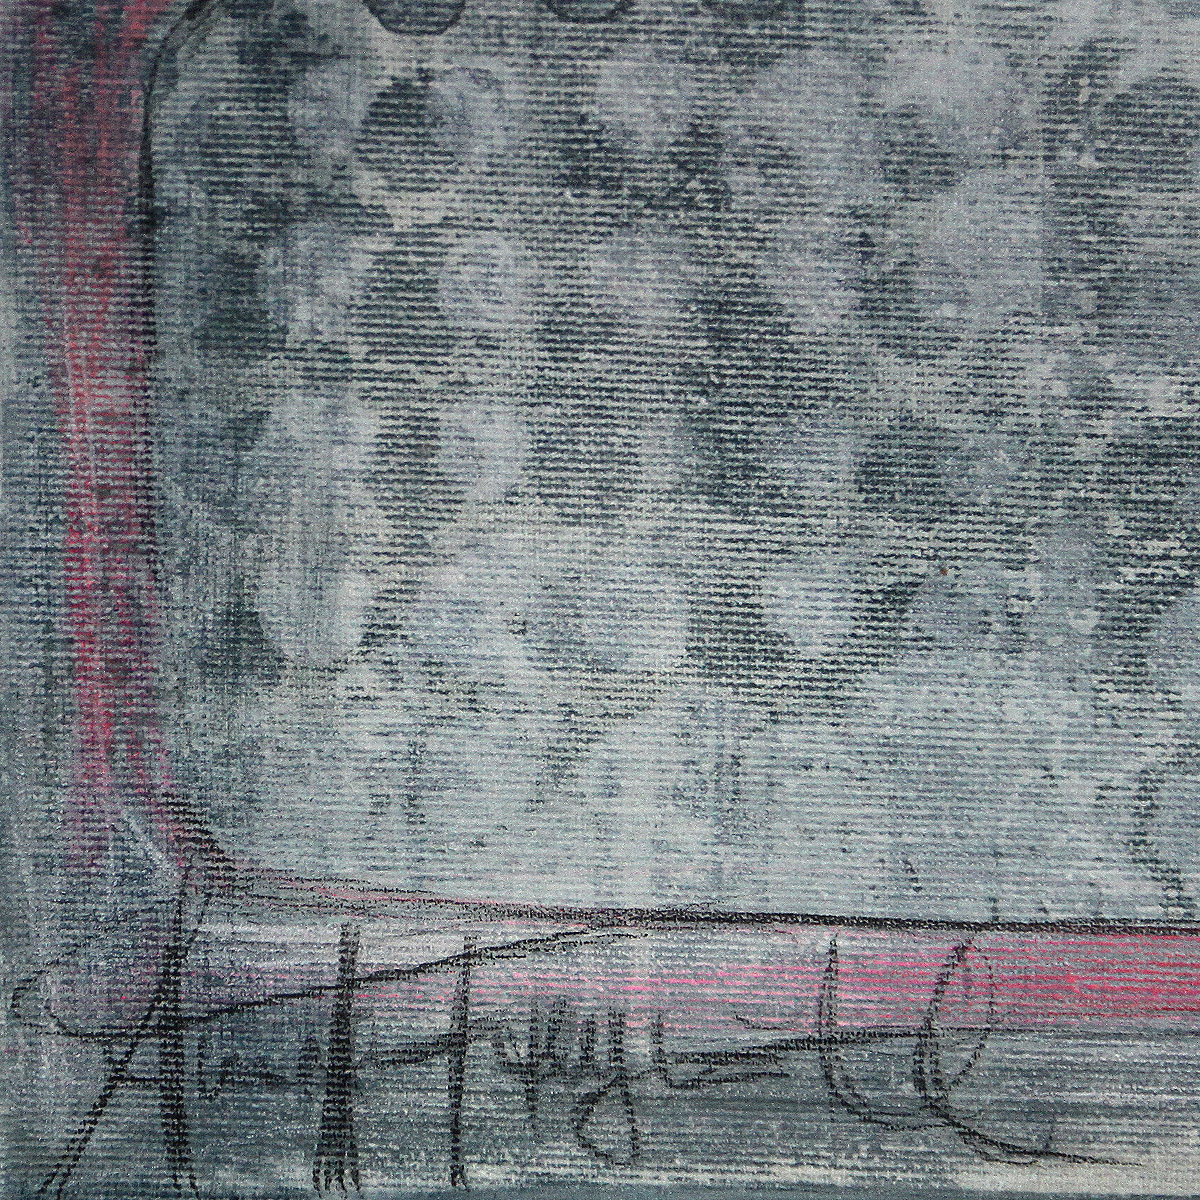 Abstrakte Acrylbilder von A. Freymuth: "Mengenlehre"